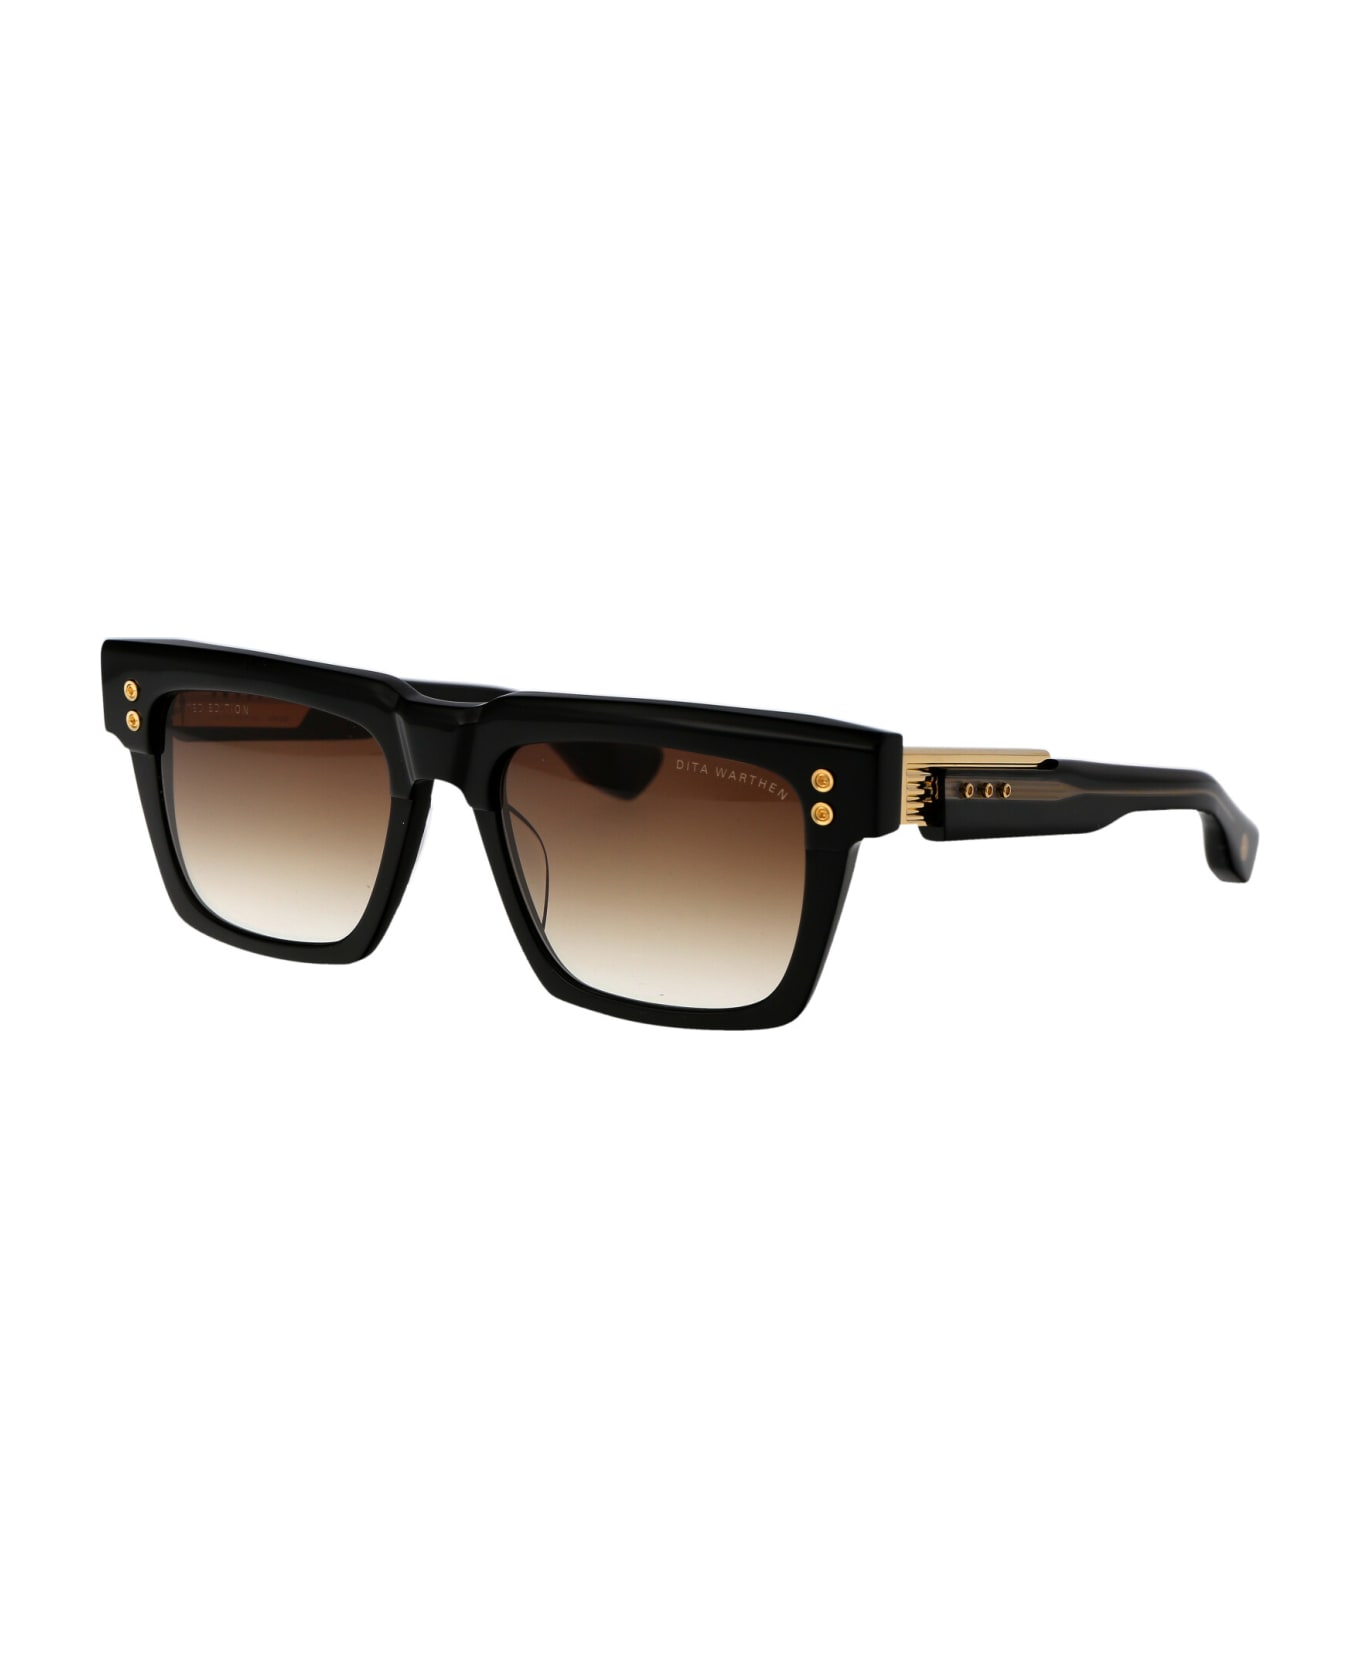 Dita Warthen Sunglasses - 01 BLACK - YELLOW GOLD W/ DARK BROWN TO CLEAR GRADIENT